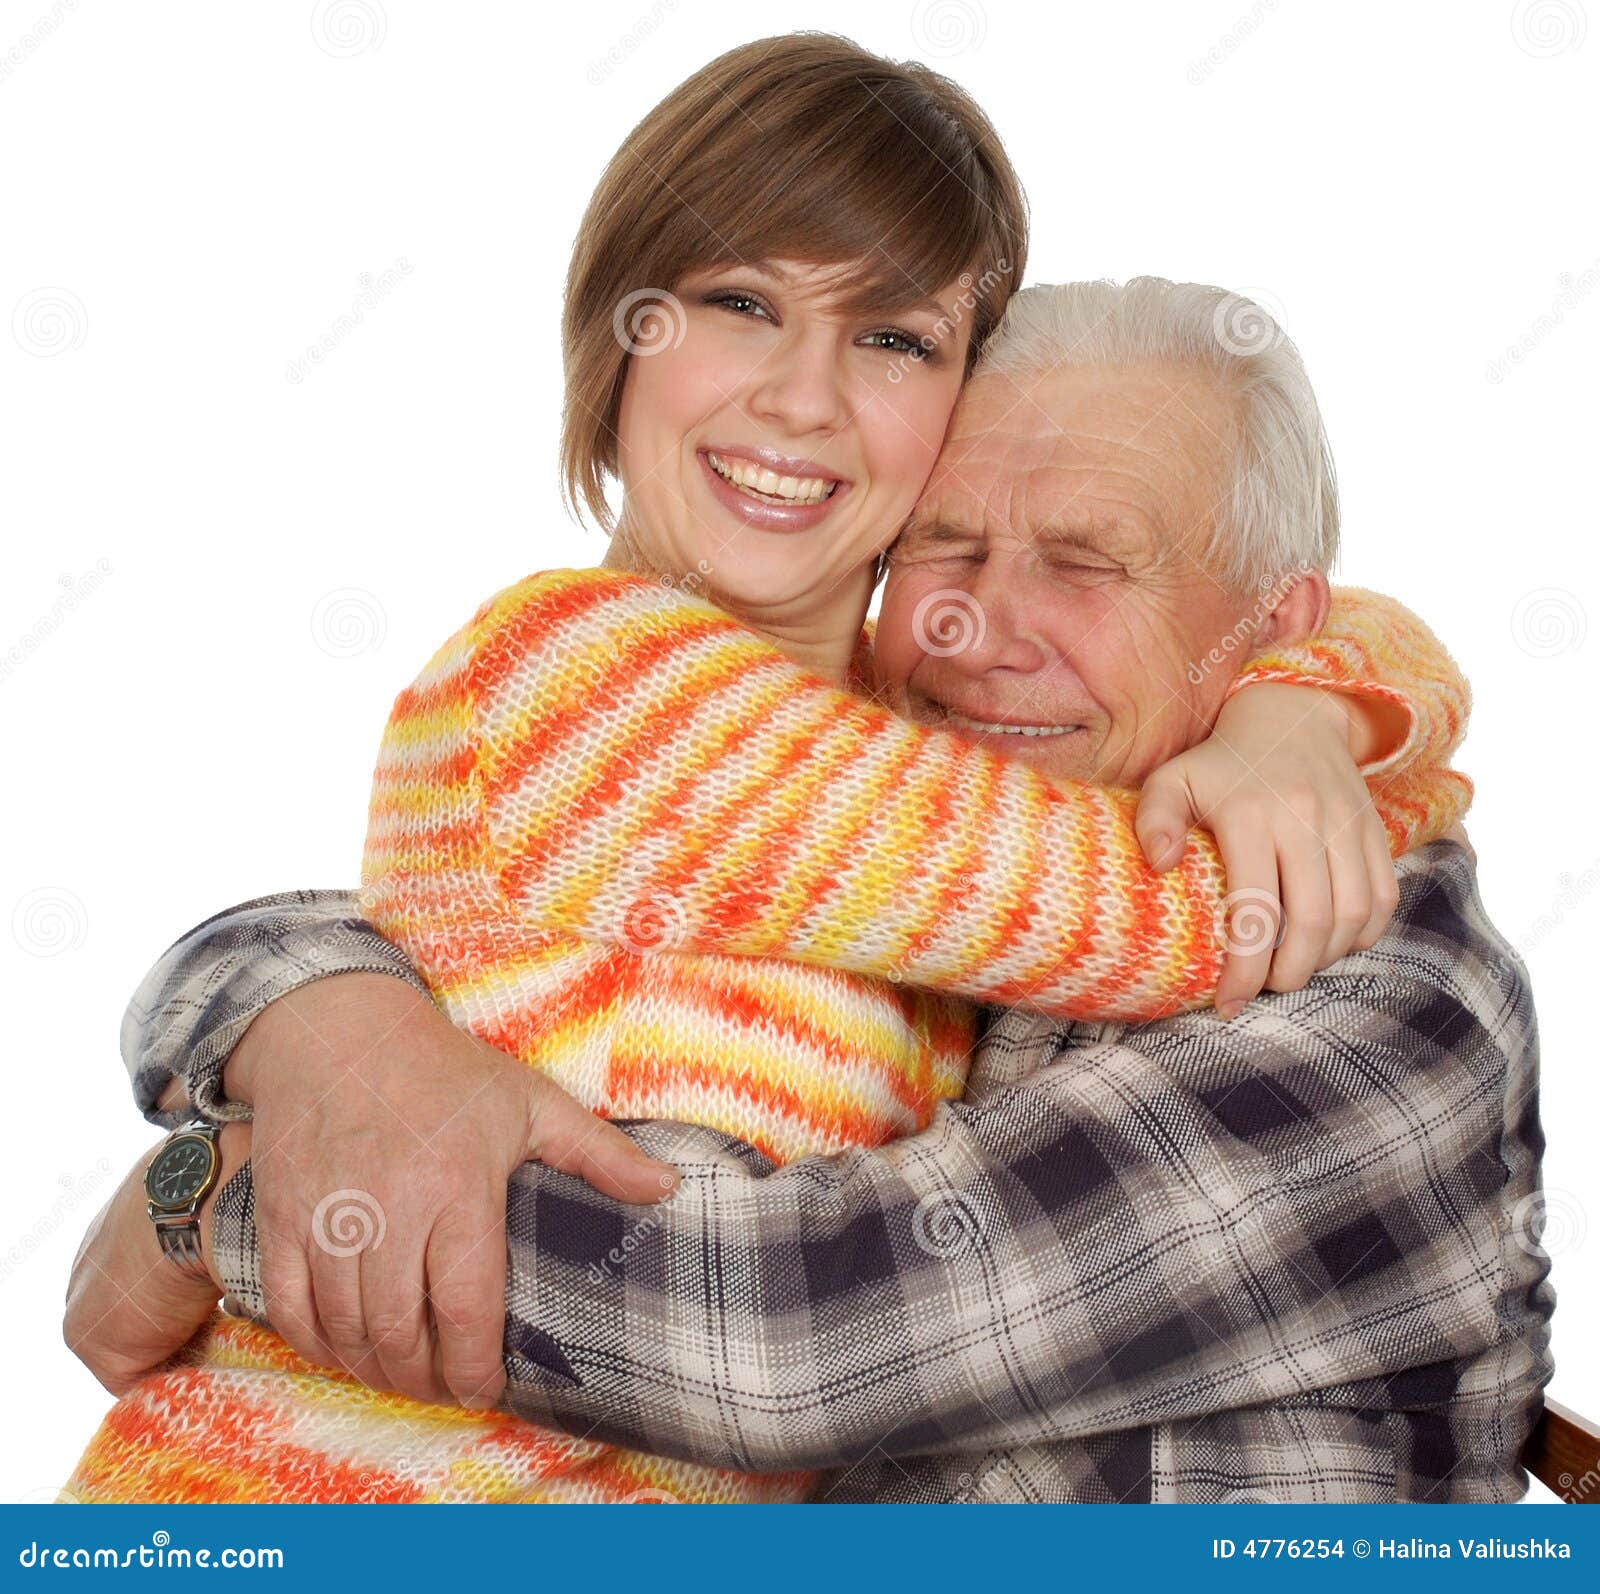 Дедушка с внучкой взрослой. Дедушка и внучка обнимаются. Дедушка обнимает внучку. Девушка обнимает дедушку. Дедушка и взрослая внучка объятия.